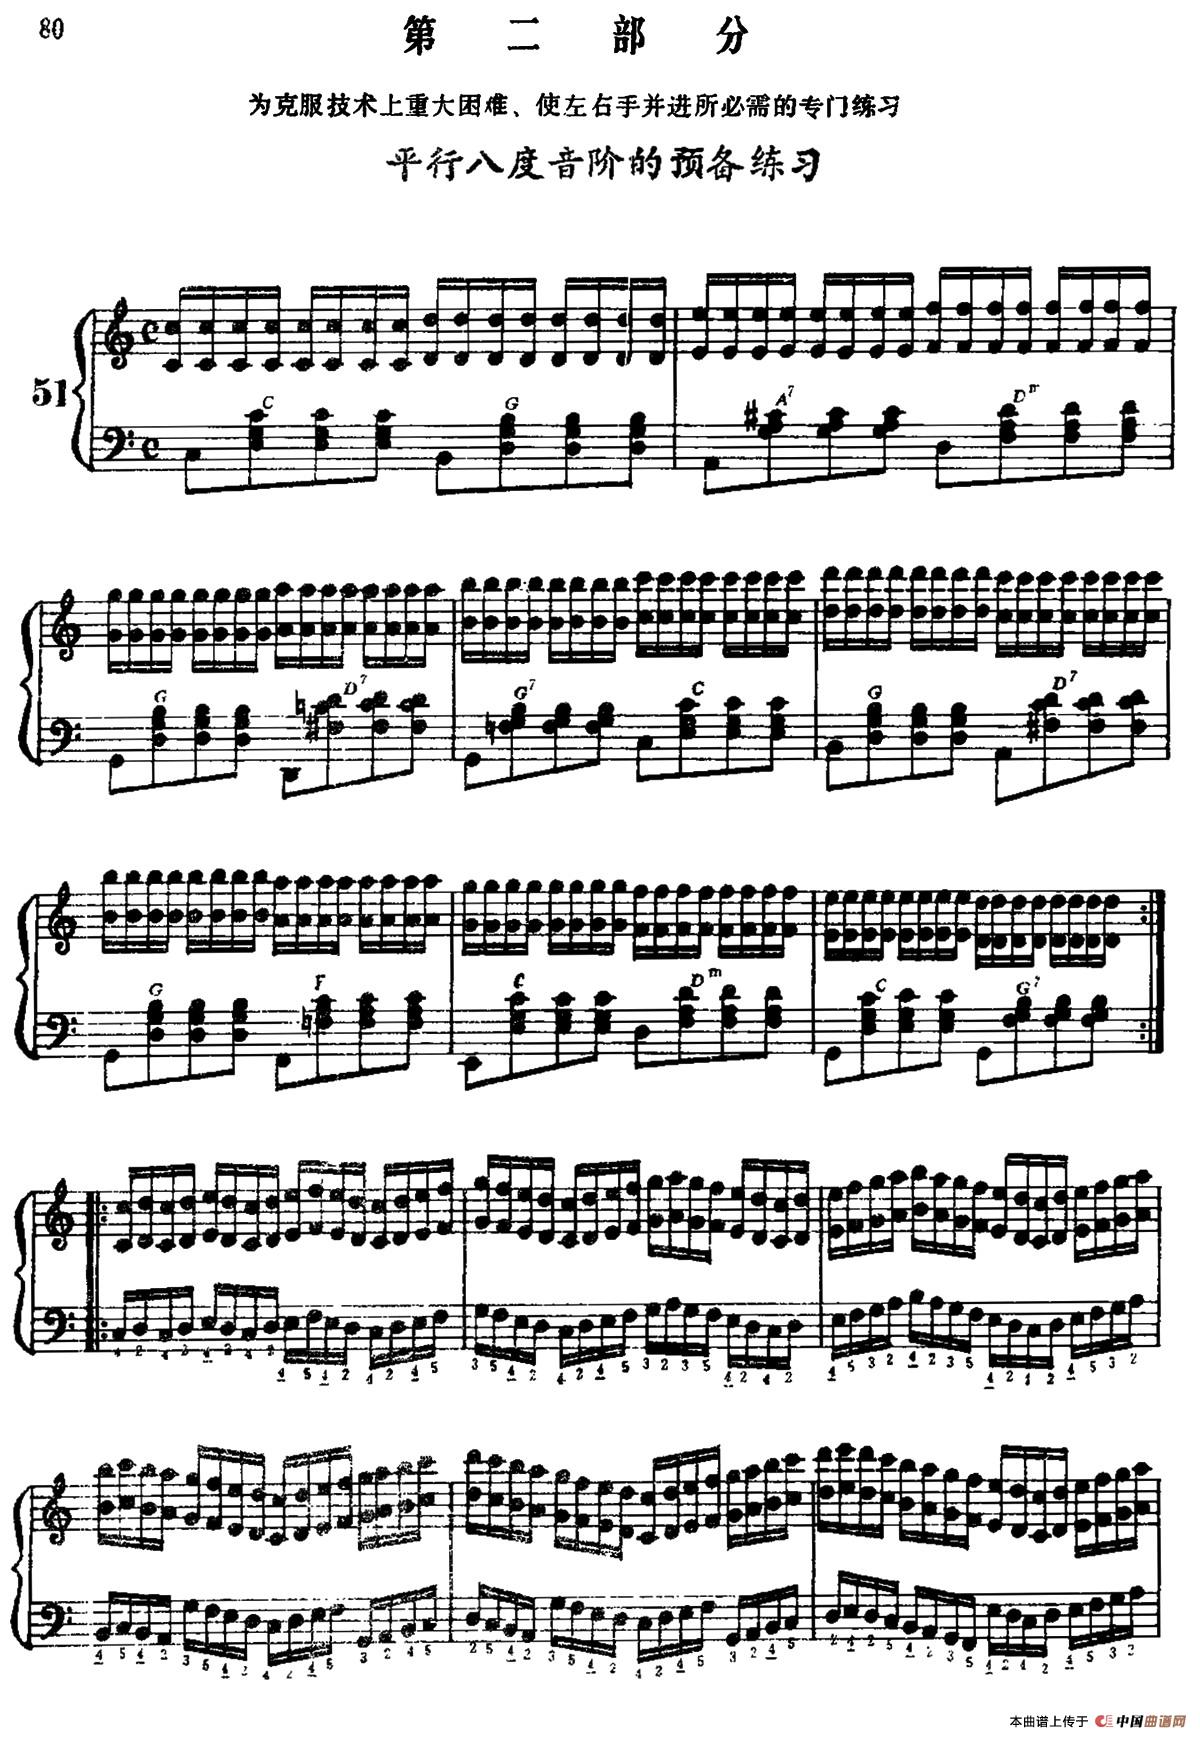 手风琴手指练习 第二部分（平行八度音阶的预备